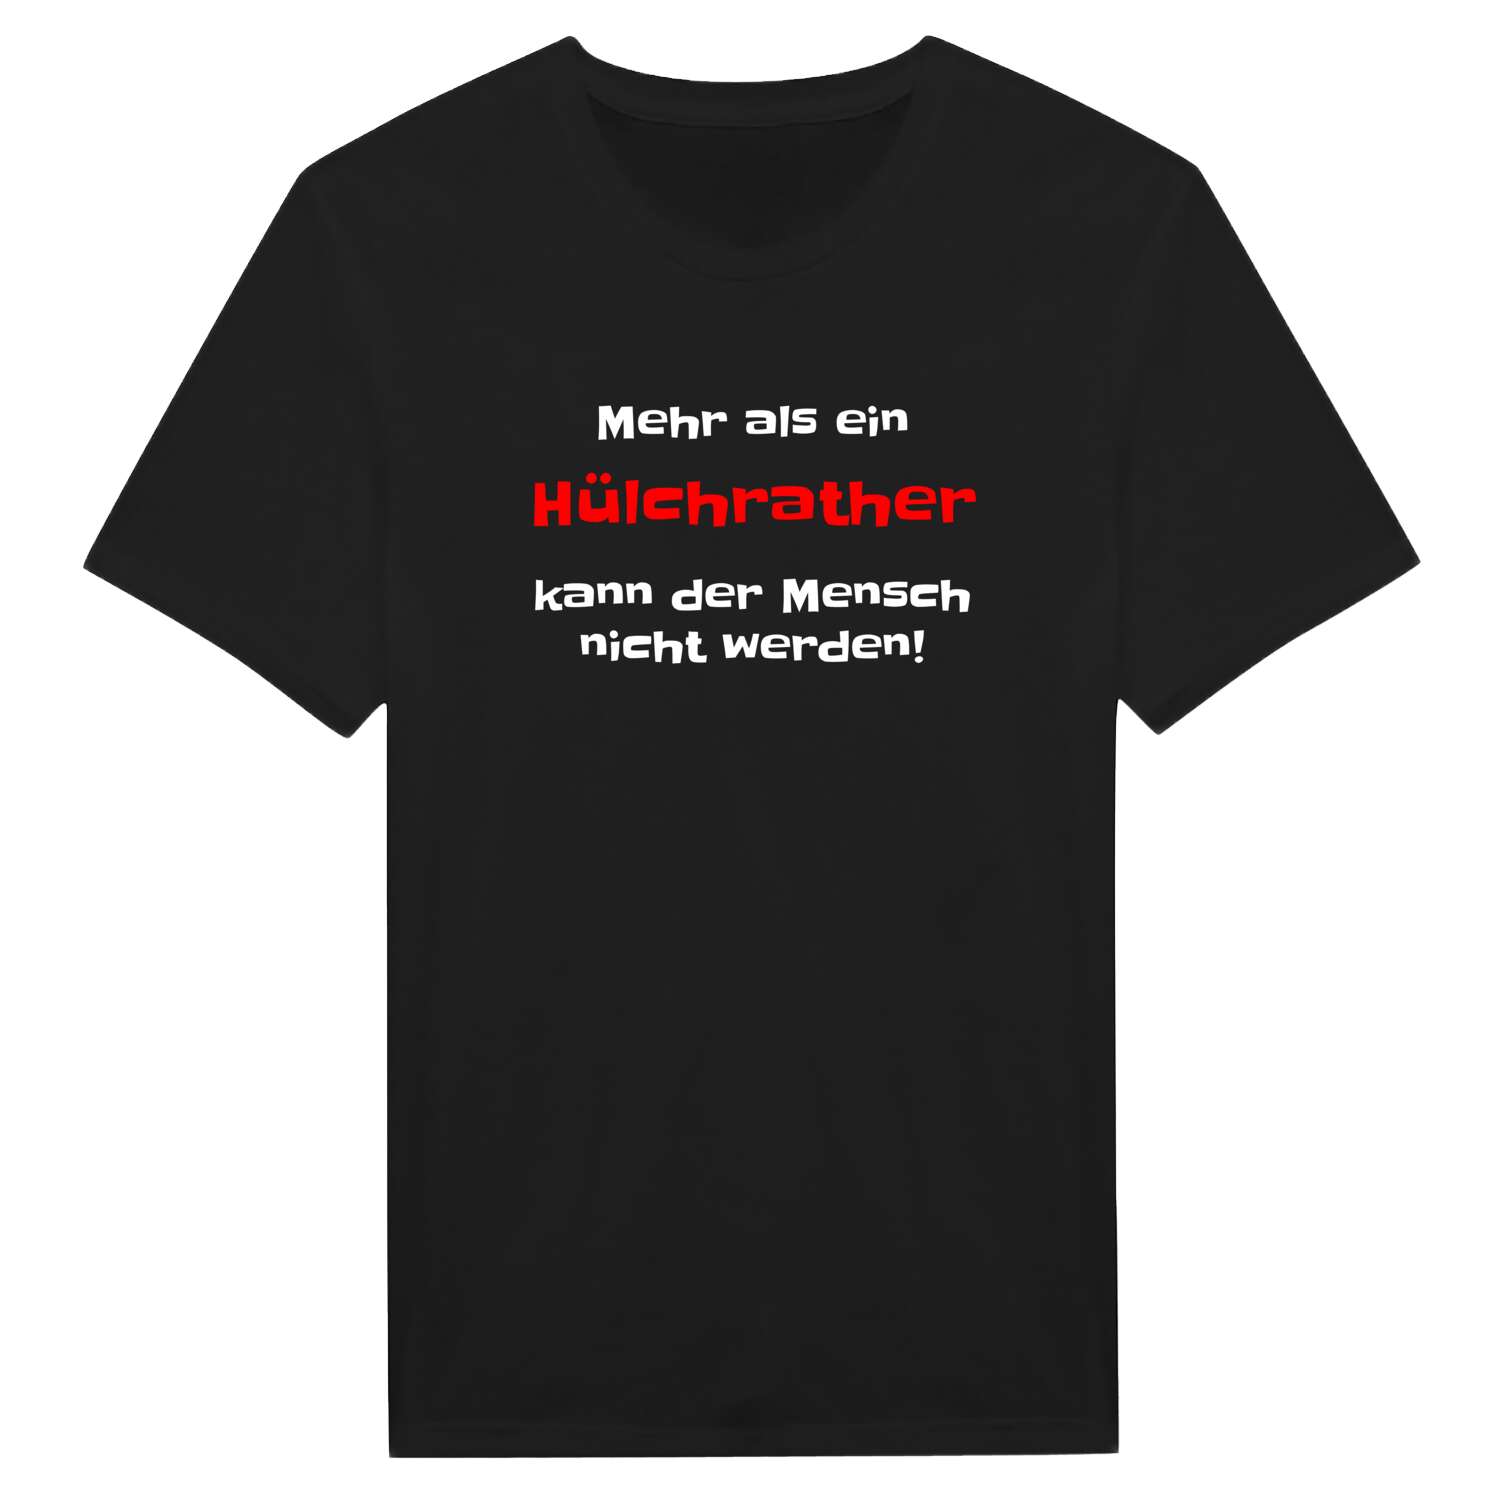 Hülchrath T-Shirt »Mehr als ein«